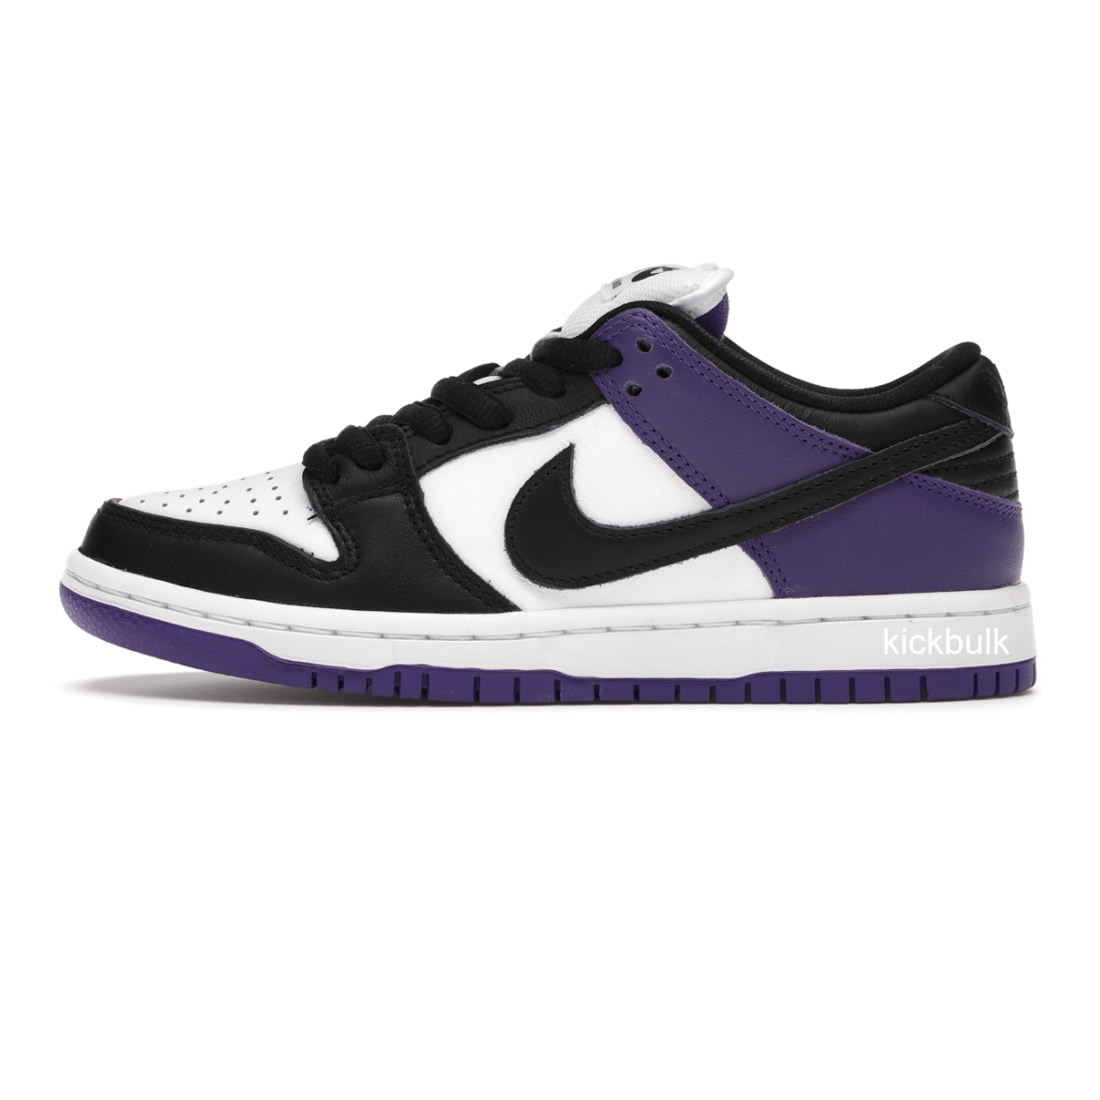 Nike Sb Dunk Low Court Purple Bq6817 500 1 - www.kickbulk.org